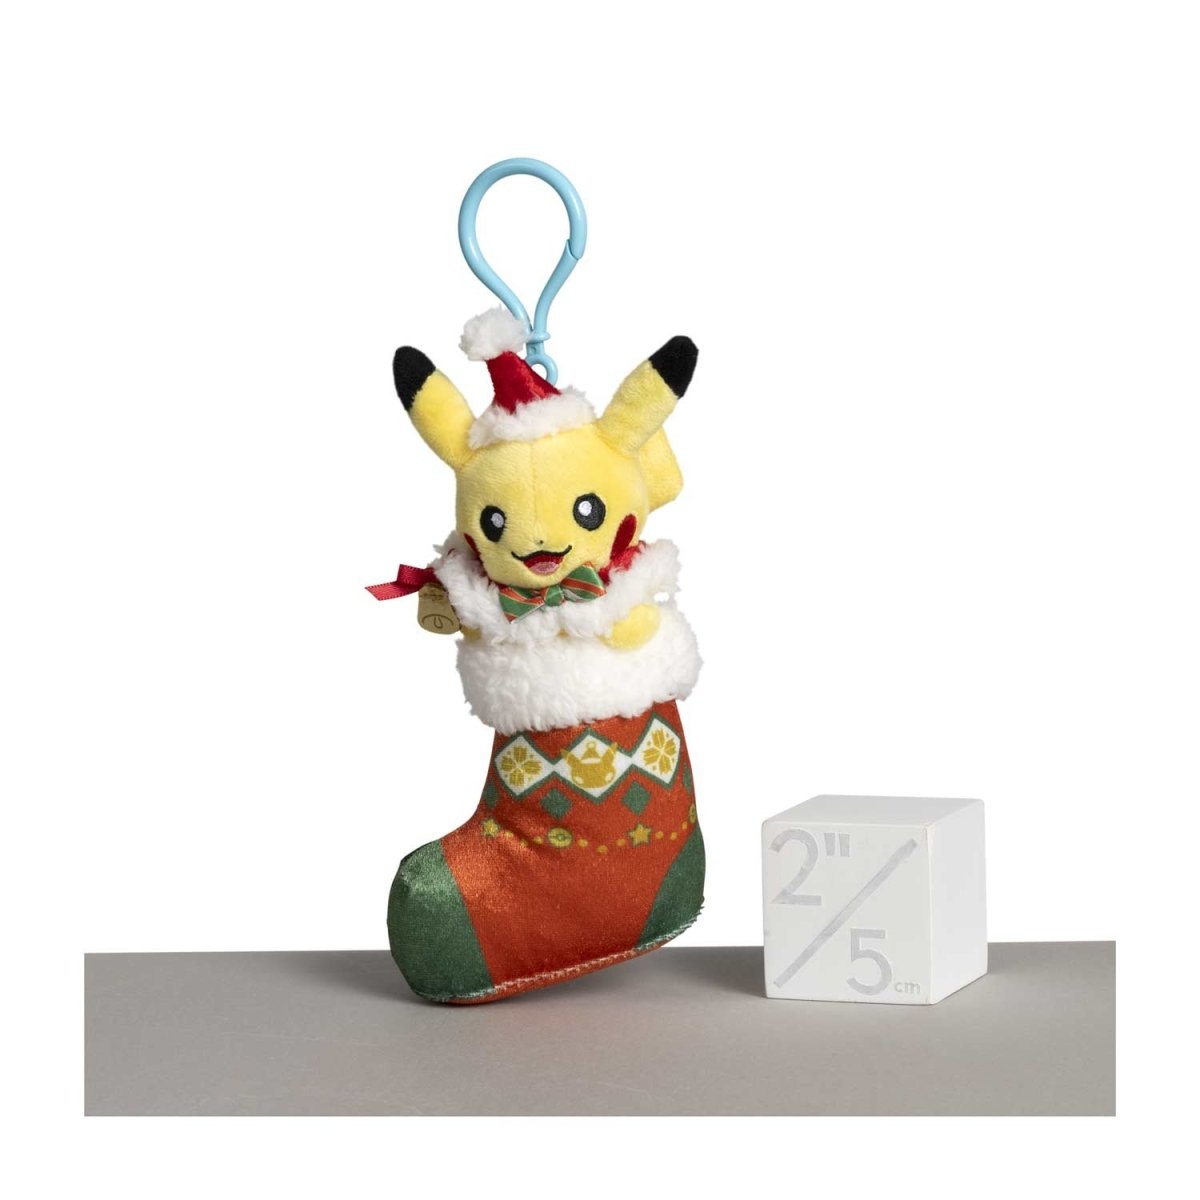 Seasonal Celebrations: Pikachu & Eevee Sweet Days Plush - 7 ¼ In